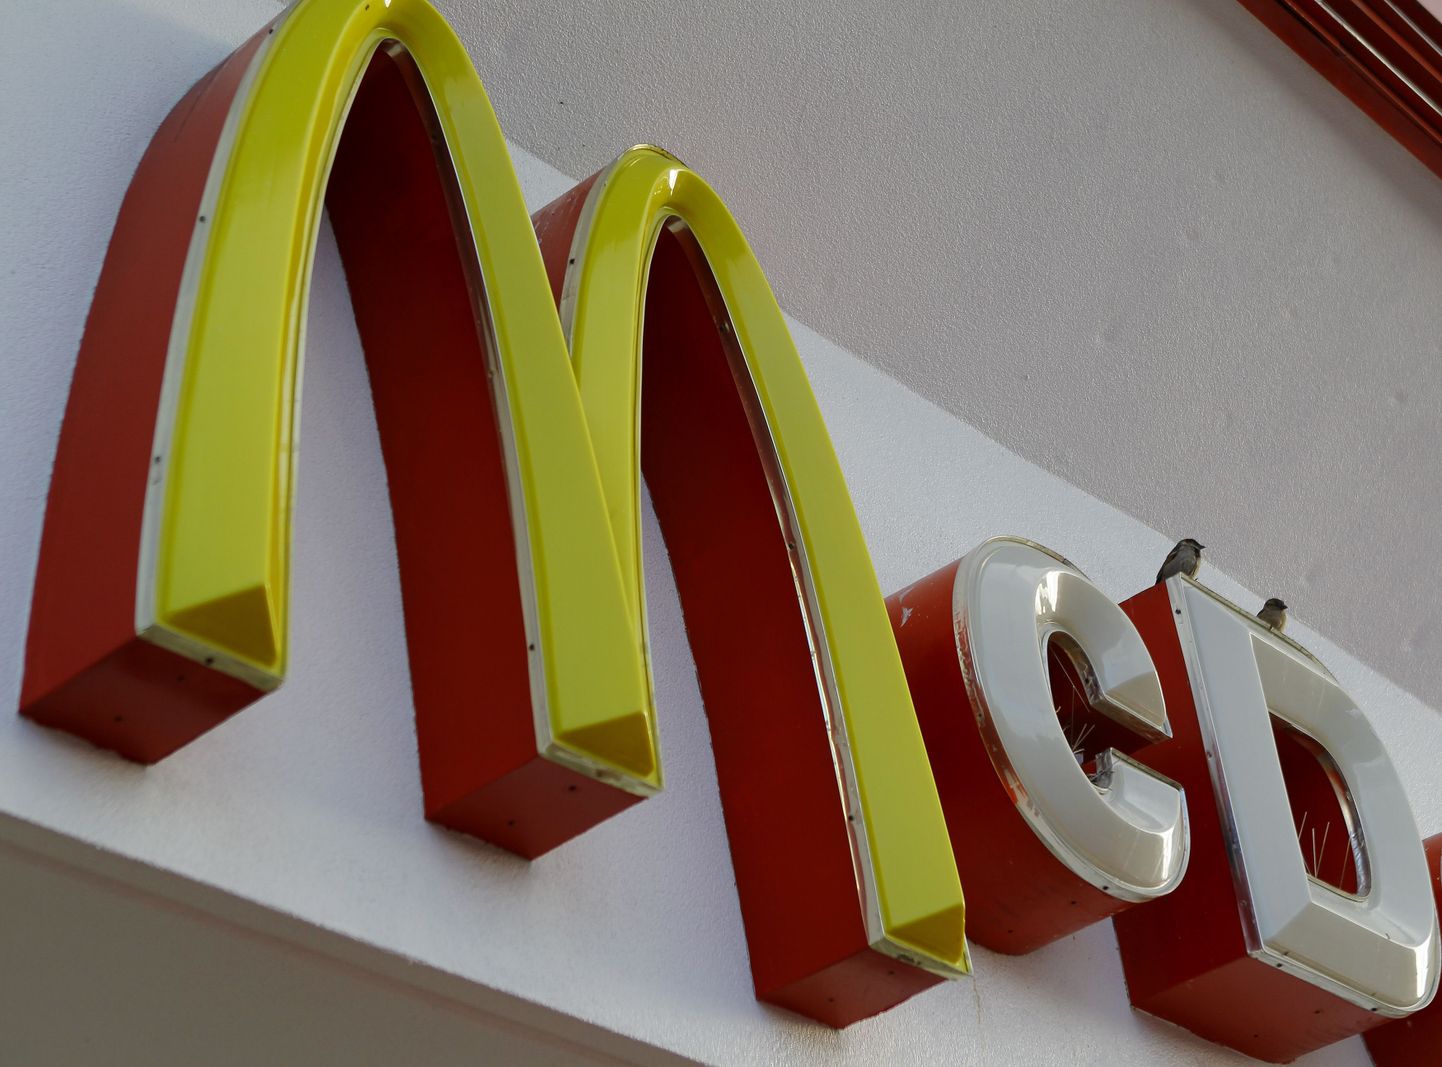 Ameeriklanna andis McDonaldsi kondoomi pärast kohtusse